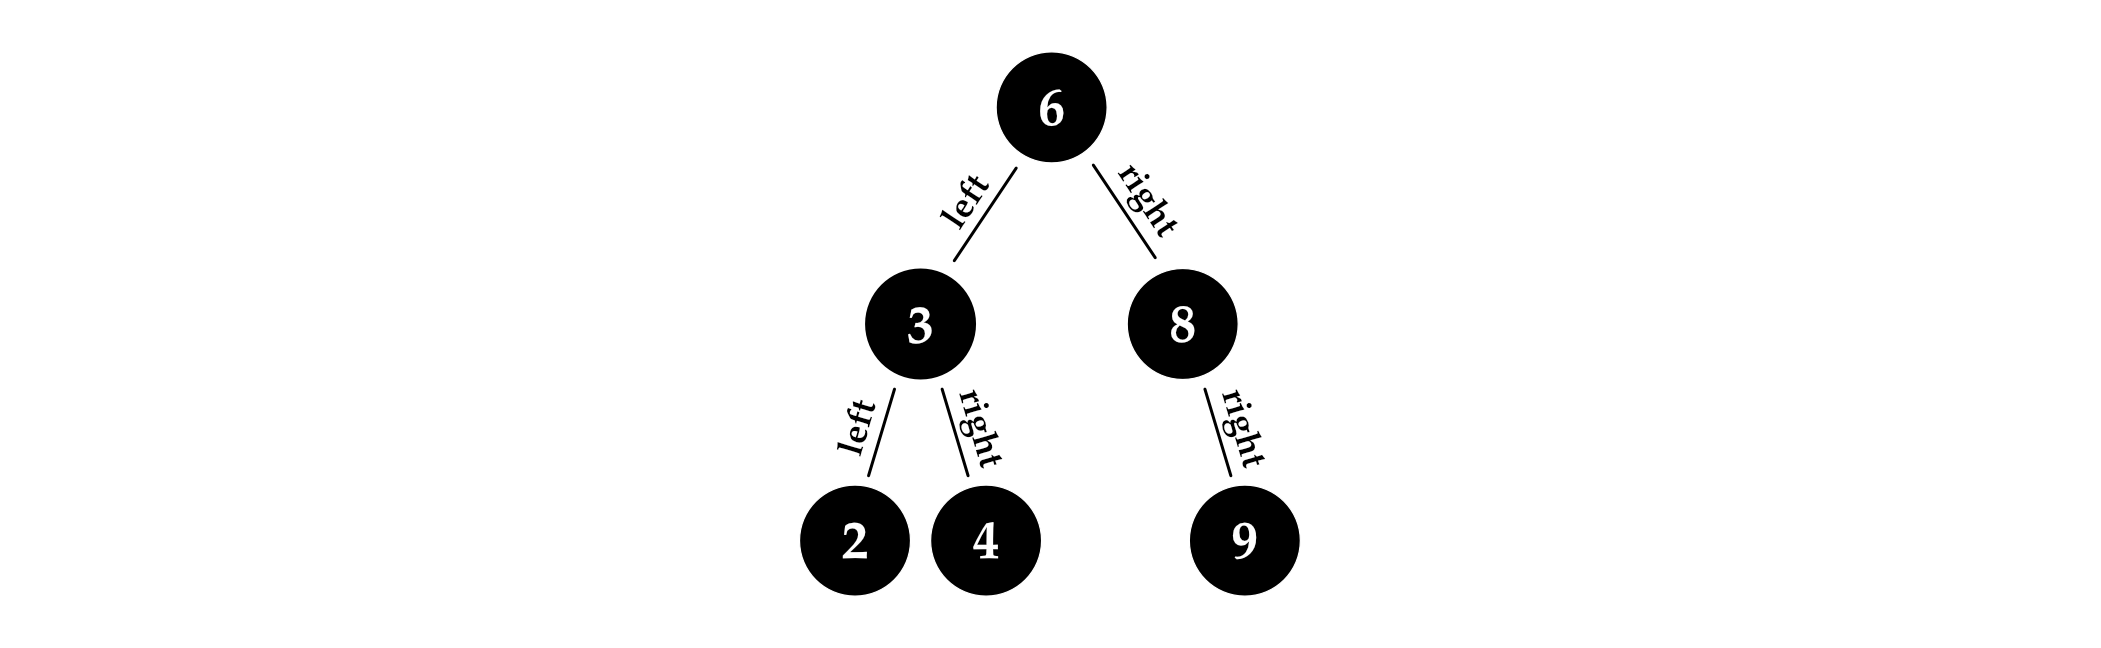 图 4.1: 一棵二分搜索树。节点 6 是根节点；节点 6、3 和 8 是内部节点，而节点 2、4 和 9 是叶子。